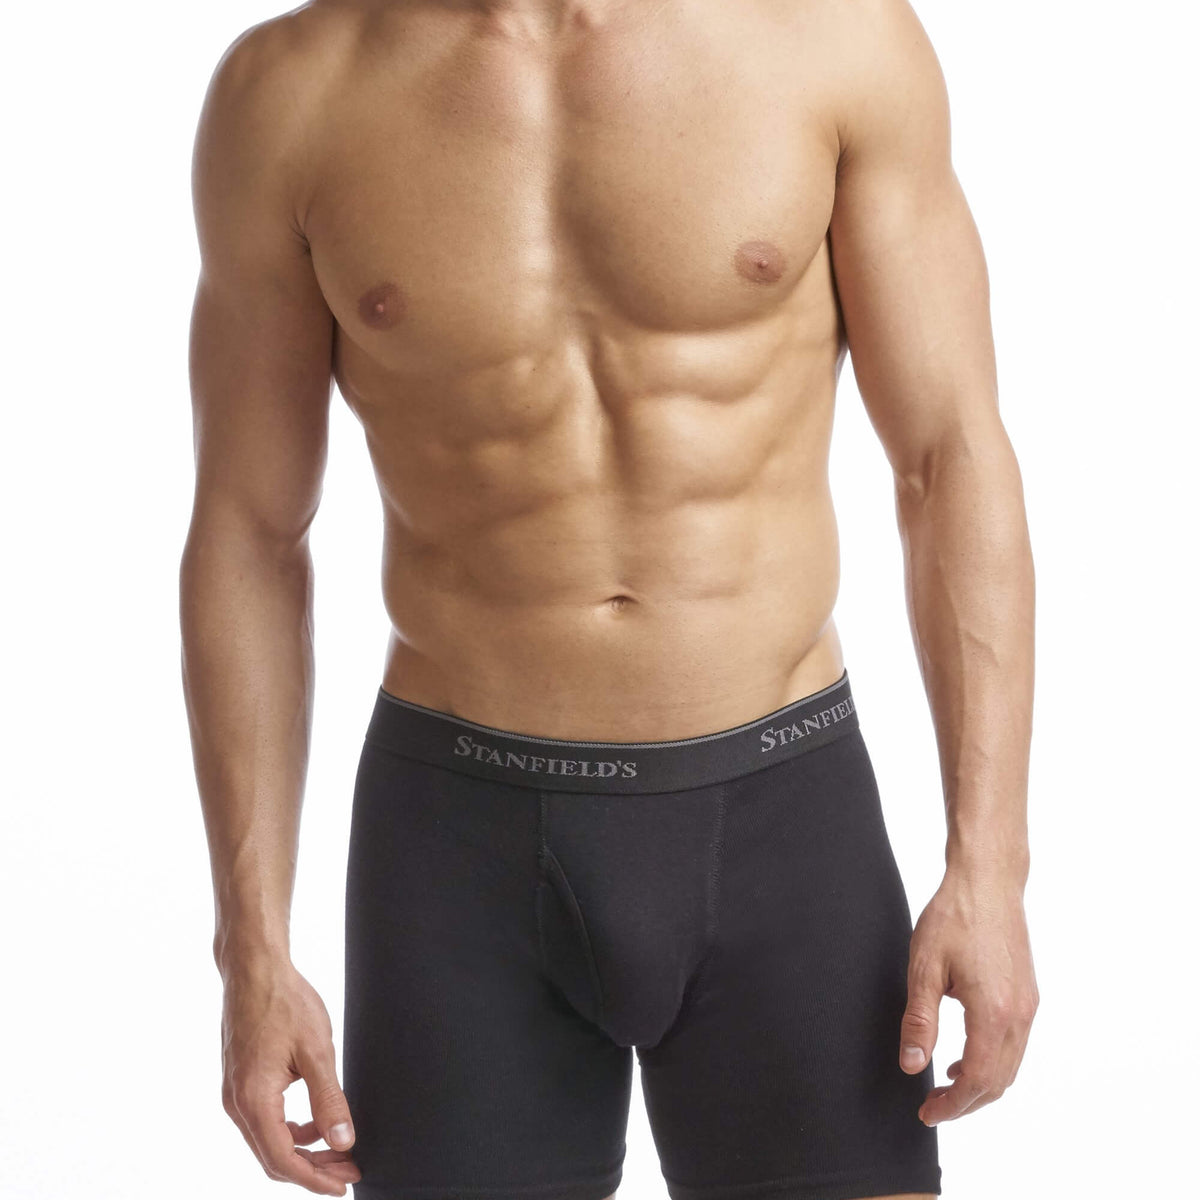 Black Pack of three cotton-blend short boxer briefs, Calvin Klein Underwear